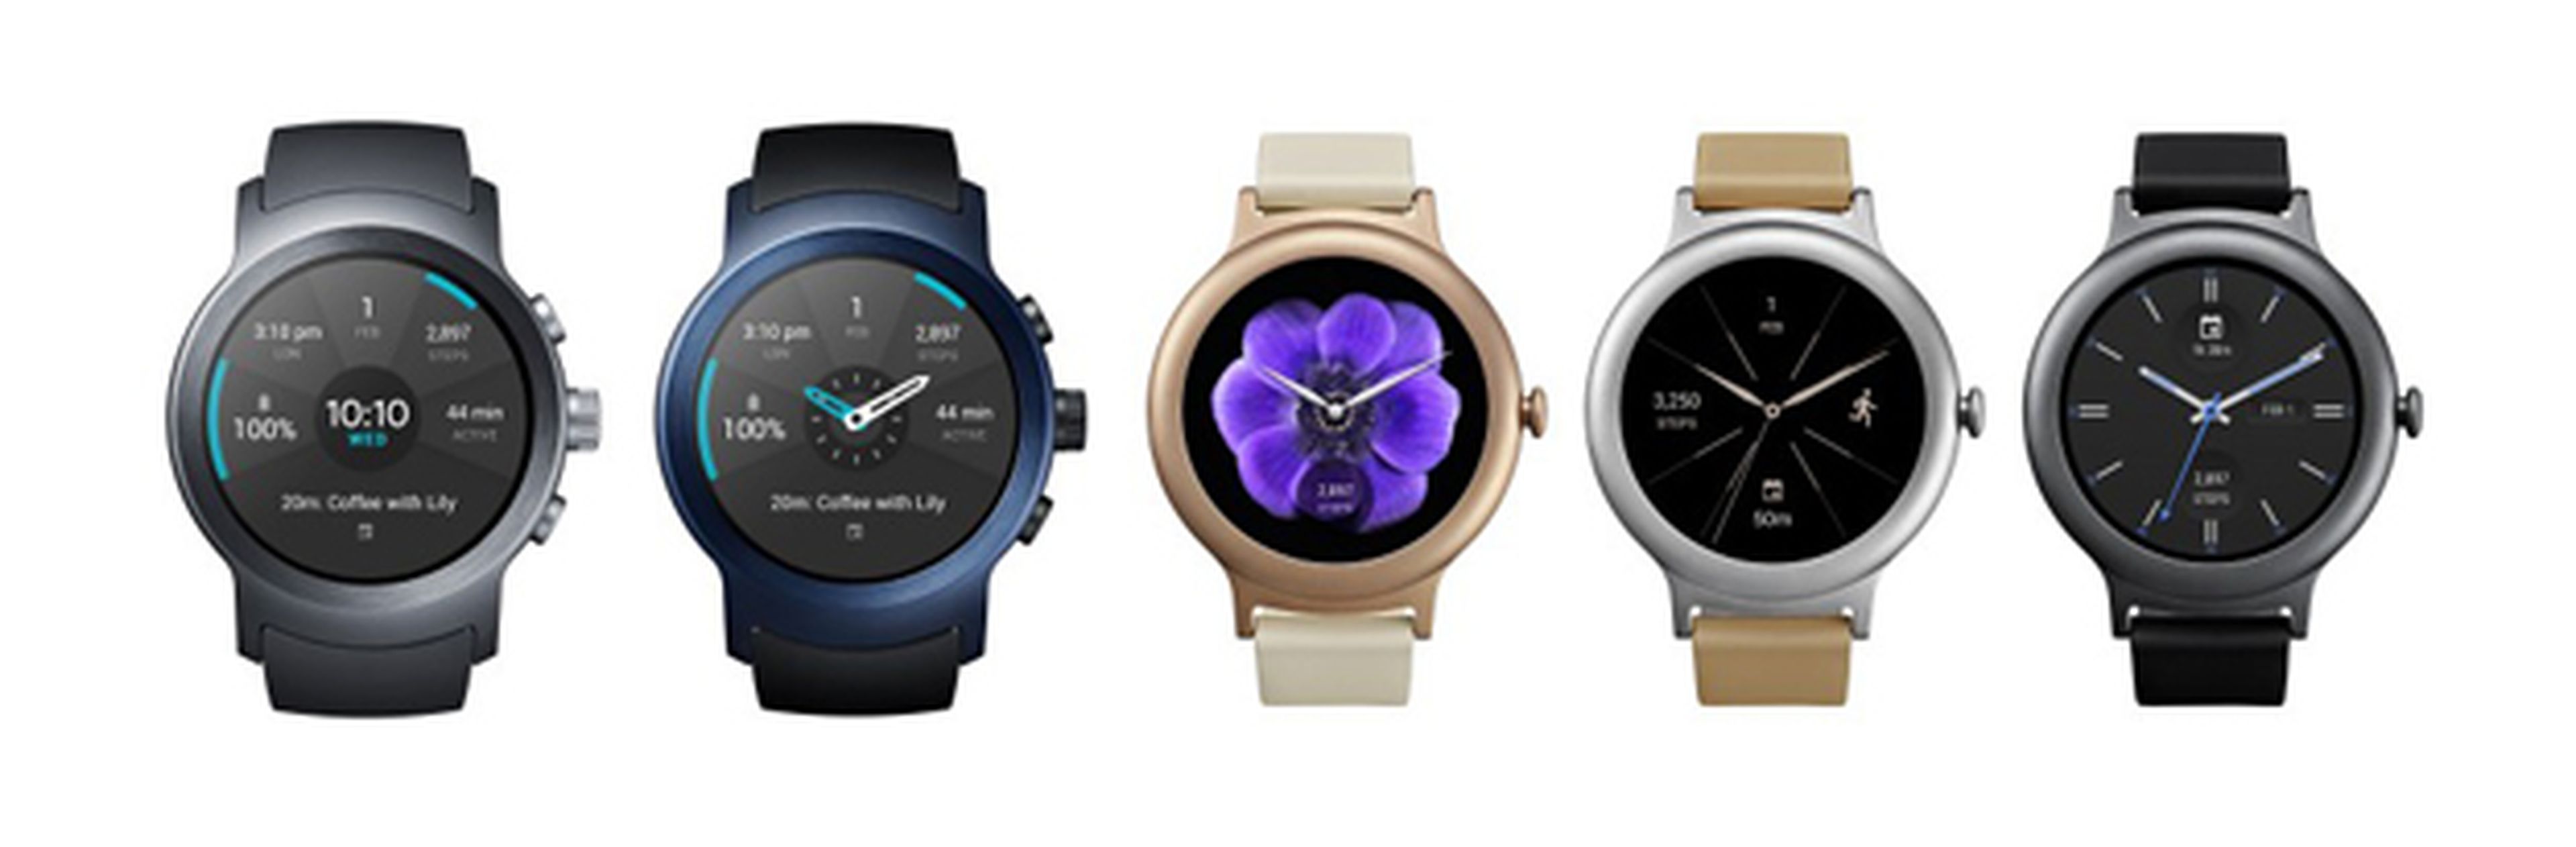 Los relojes de LG con Android Wear 2.0